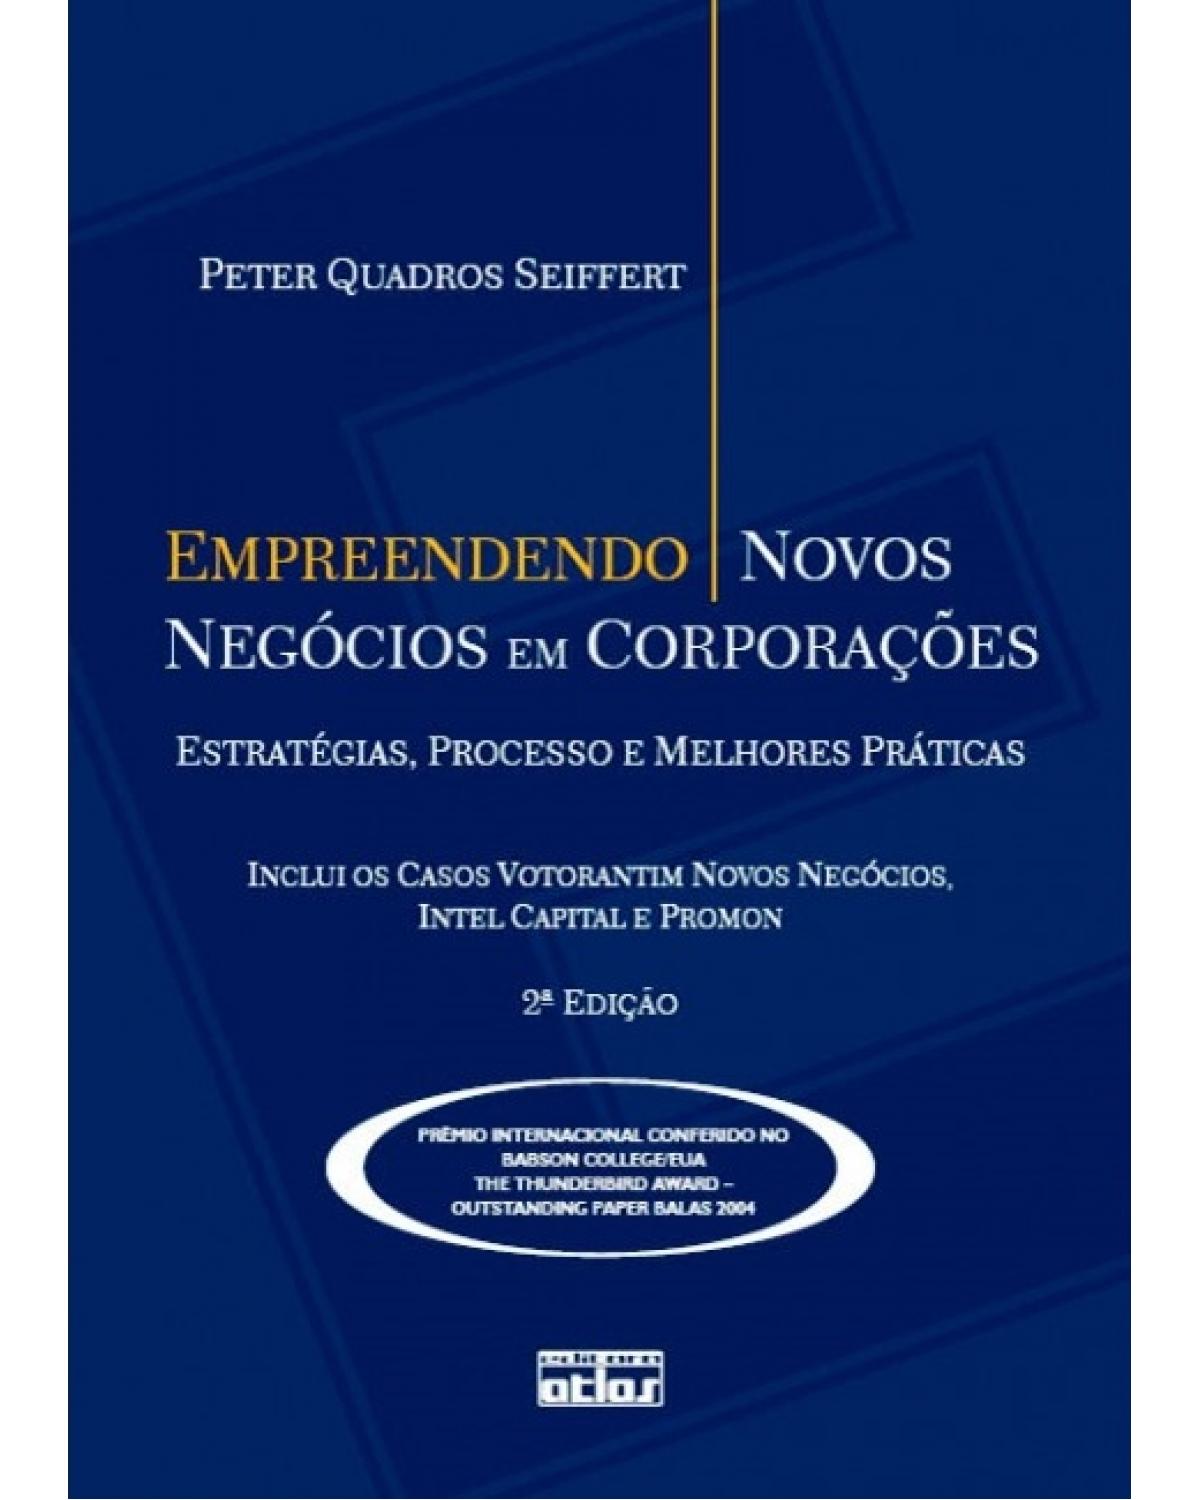 Empreendendo novos negócios em corporações - Estratégias, processo e melhores práticas - 2ª Edição | 2008